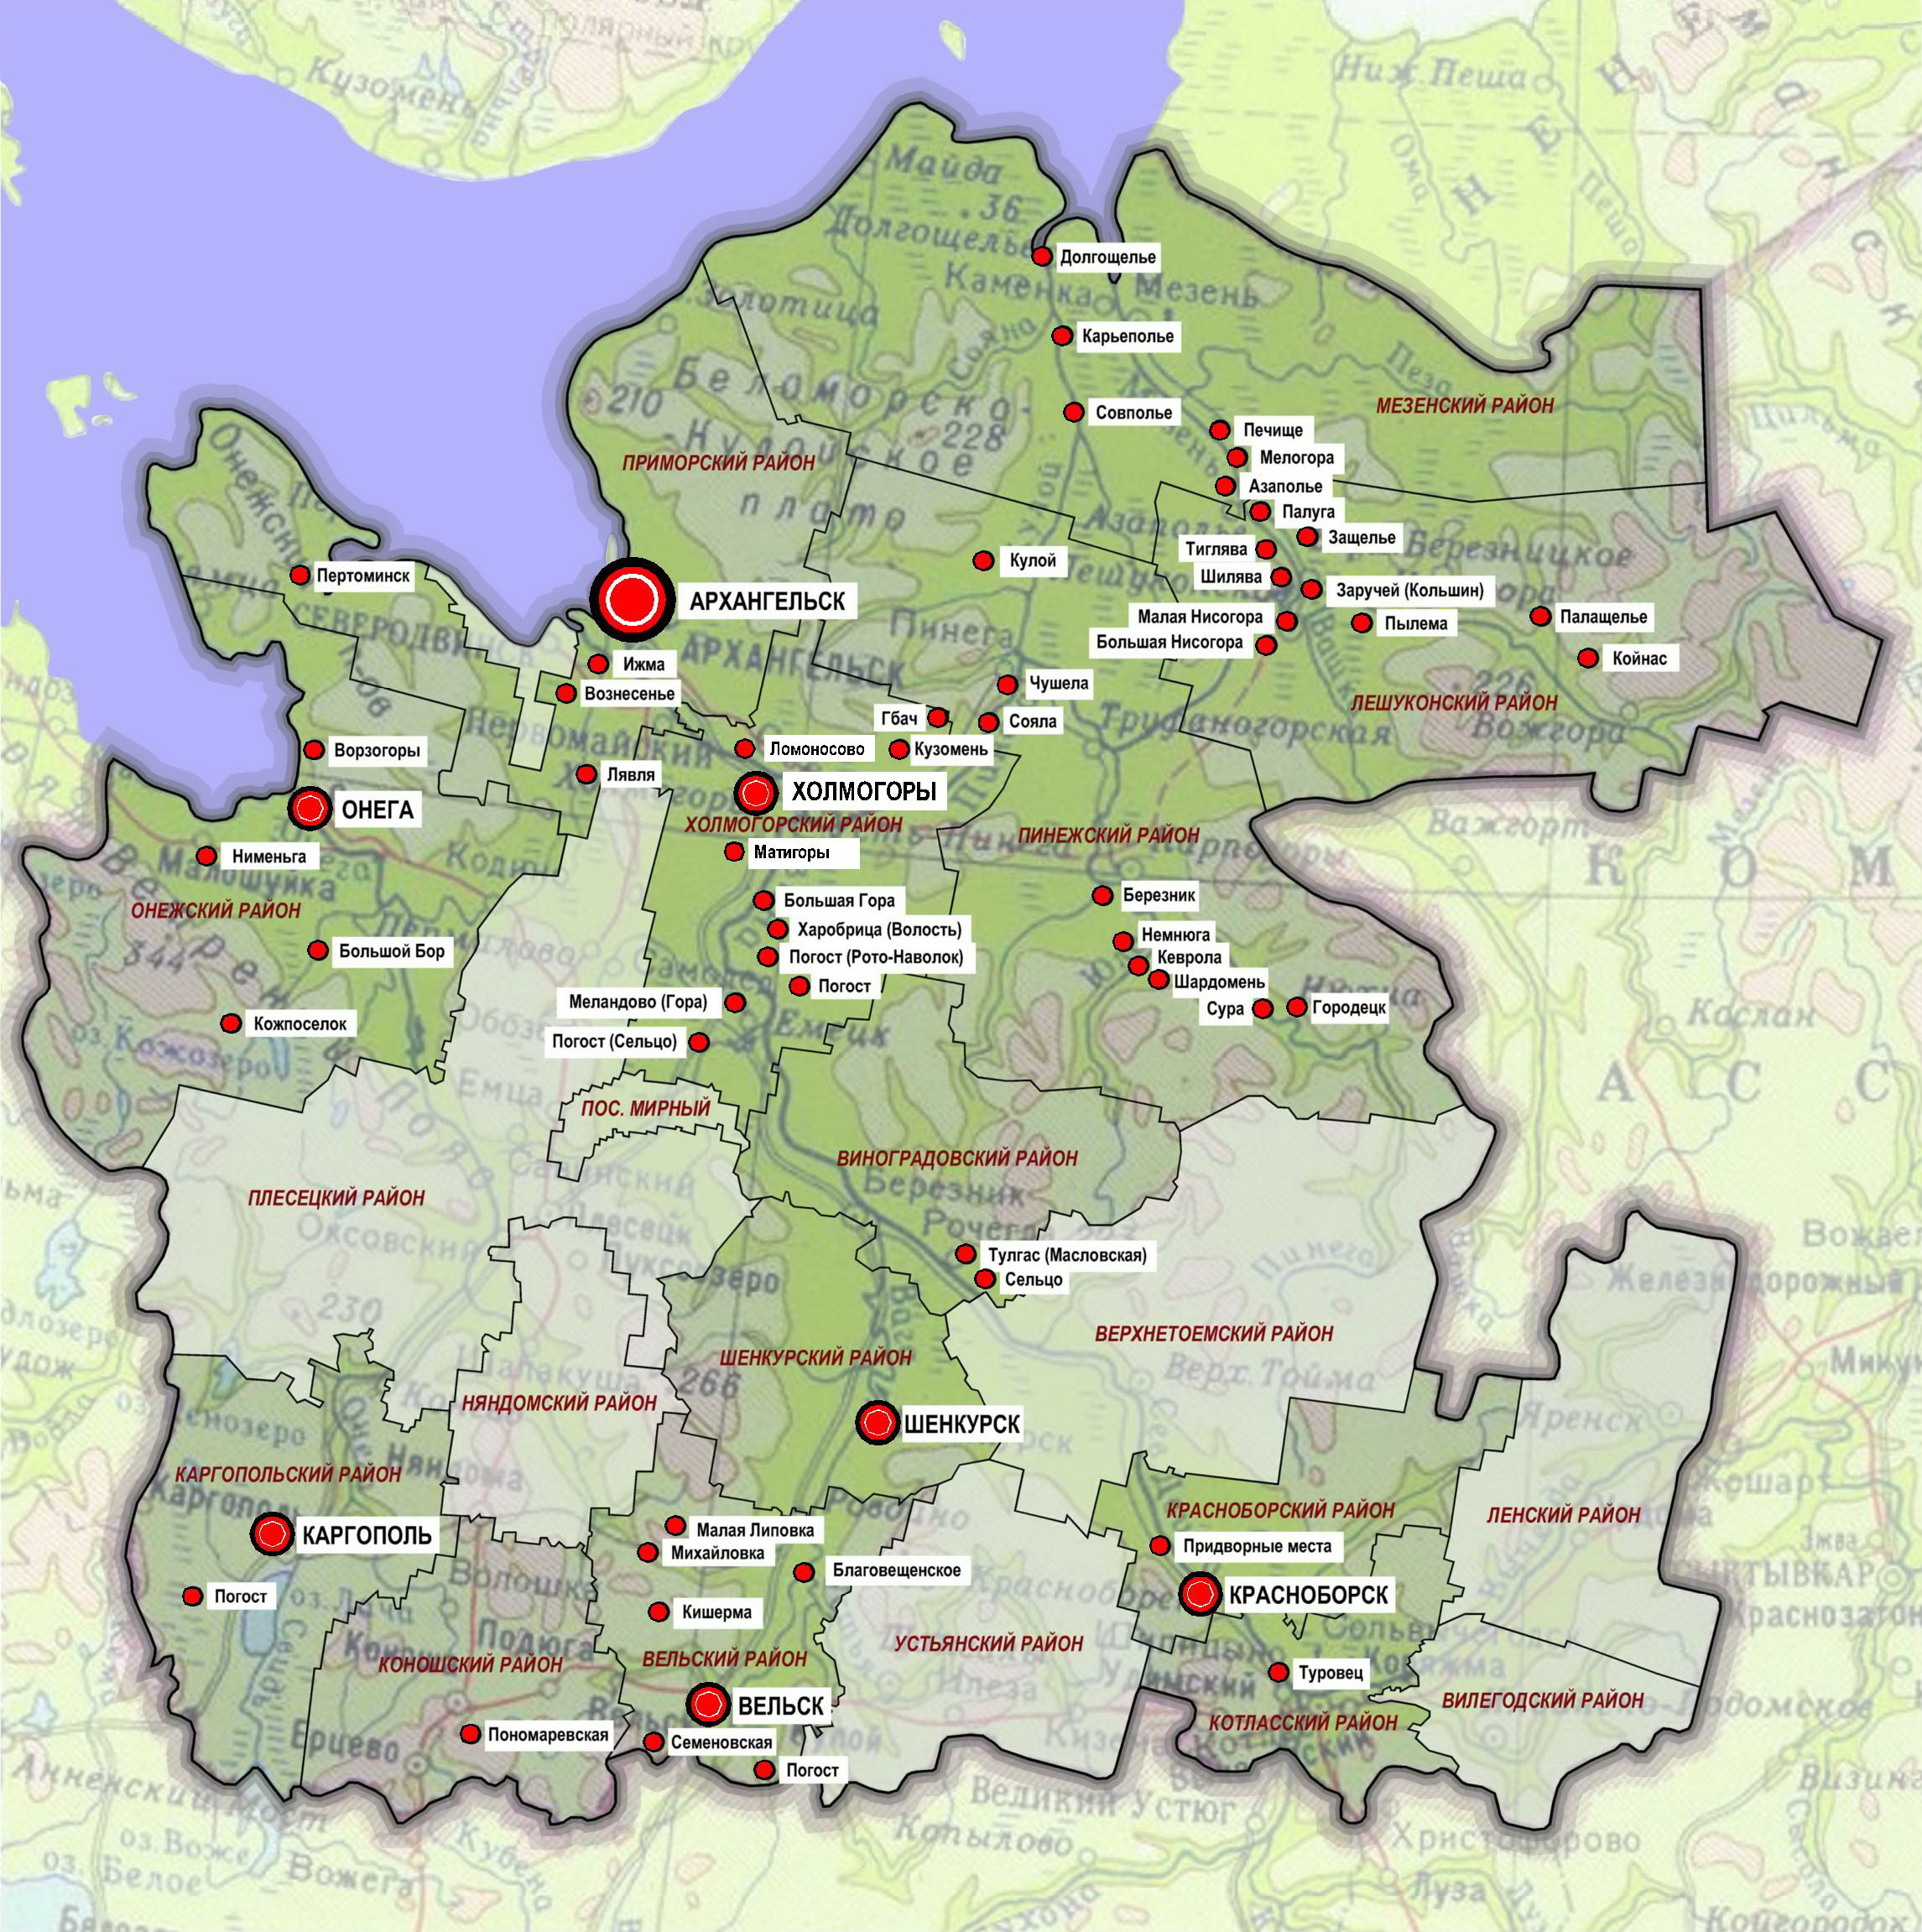 Сводная карта-схема населенных пунктов Архангельской области, где расположены 286 объектов культурного наследия, на которые разрабатывались проекты зон охраны